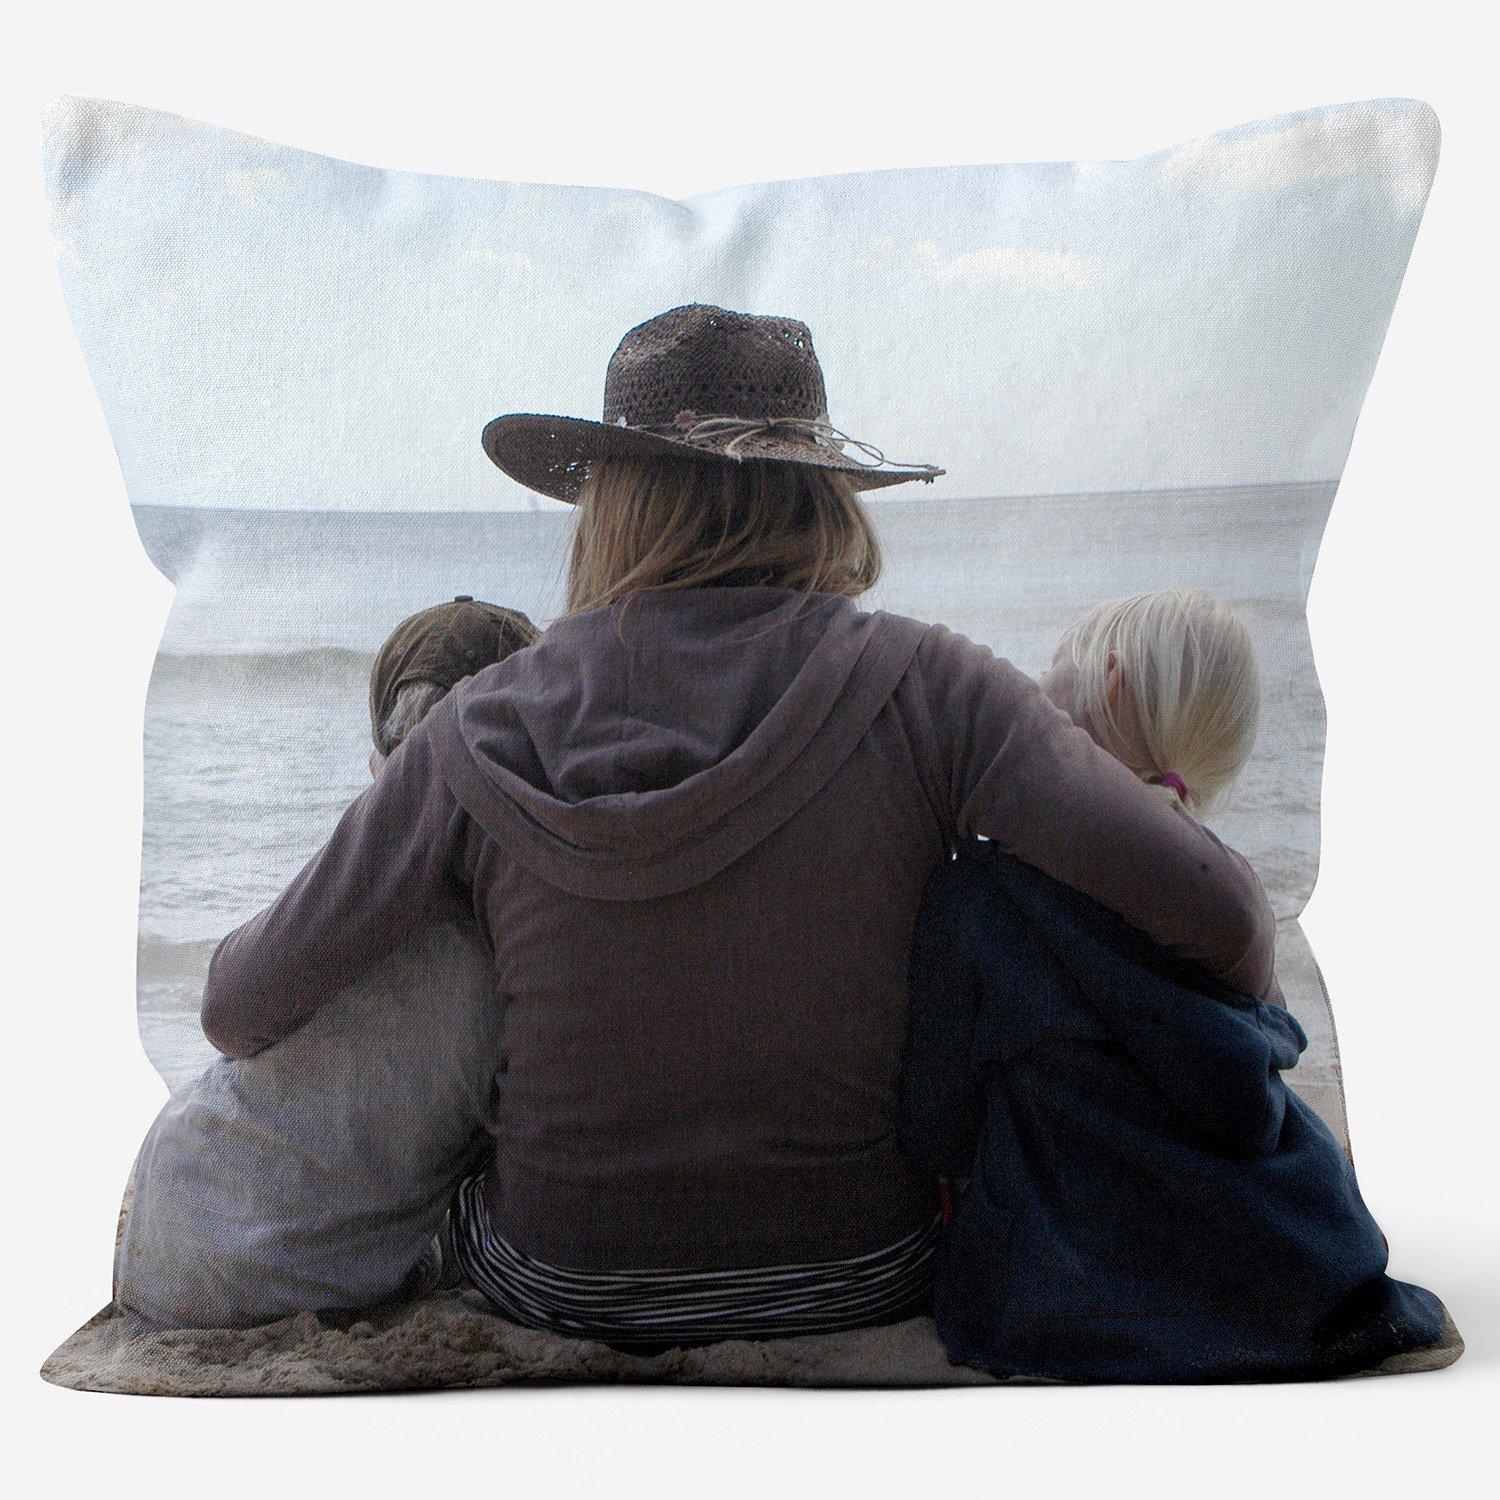 Single Image Photo Cushion Bespoke Layout Service - Luxury Photo Gift - Handmade Cushions UK - WeLoveCushions